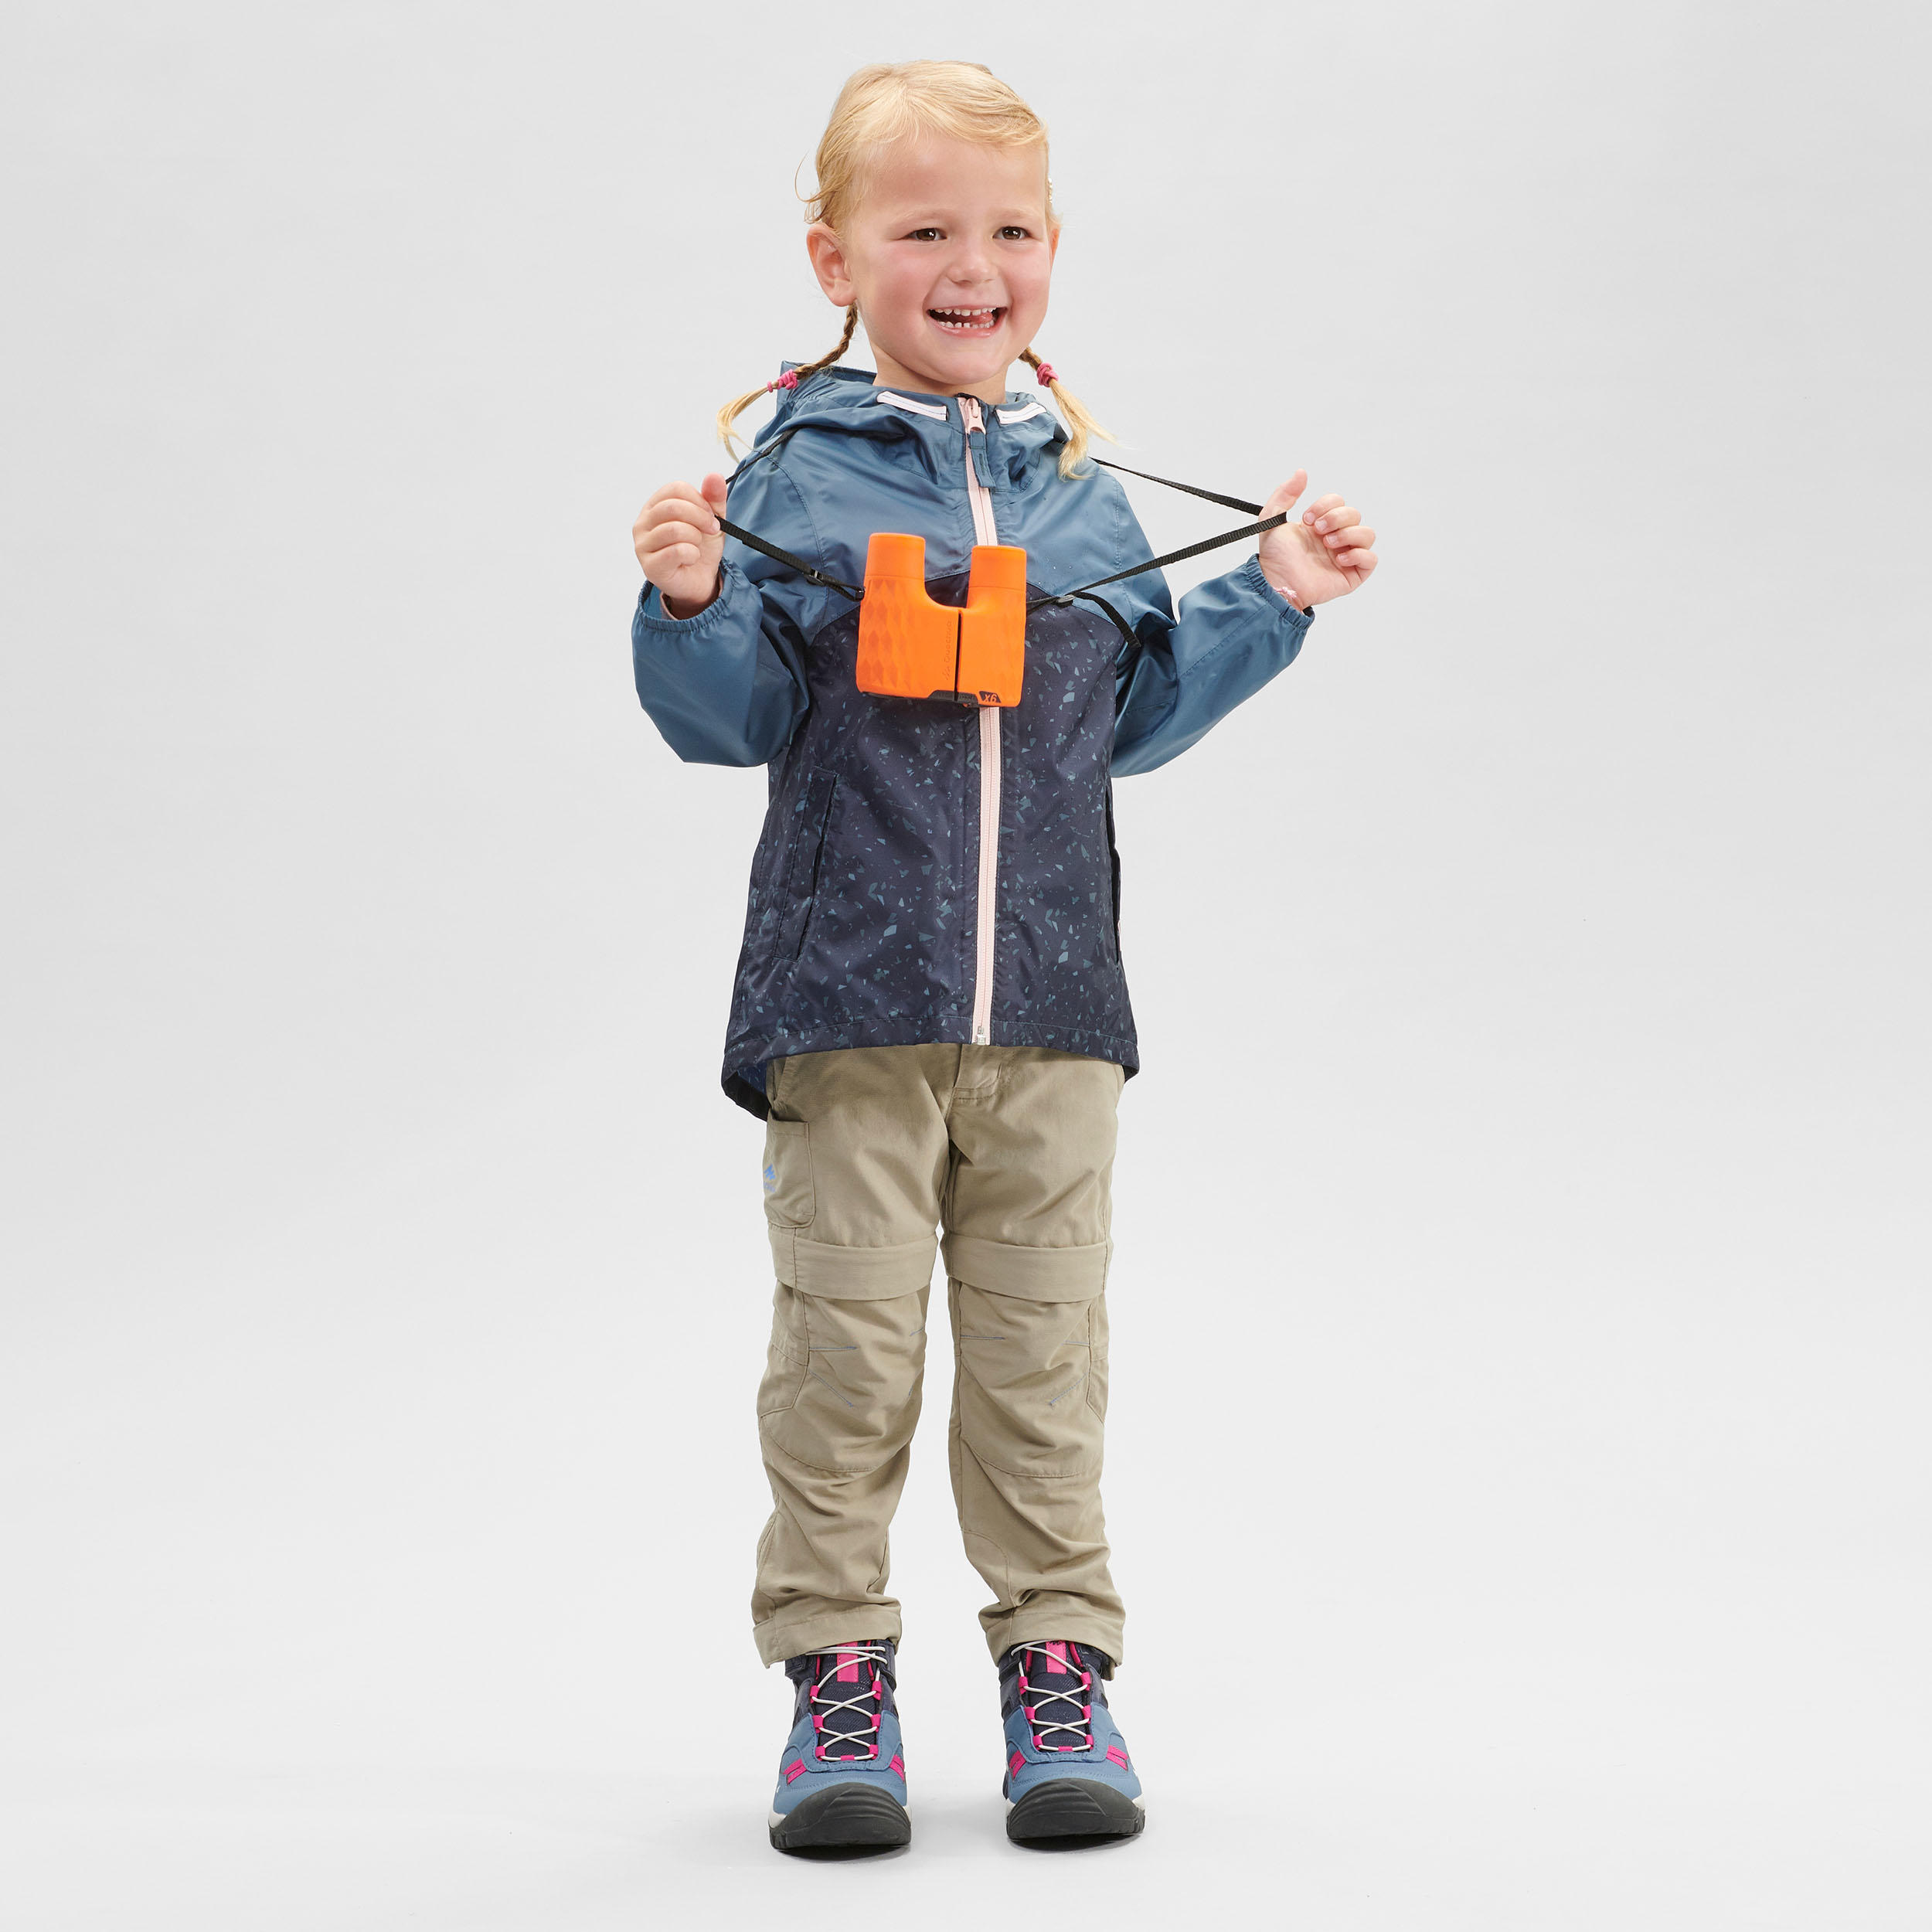 Kids’ Waterproof Hiking Jacket - MH100 Zip - Aged 2-6 2/8